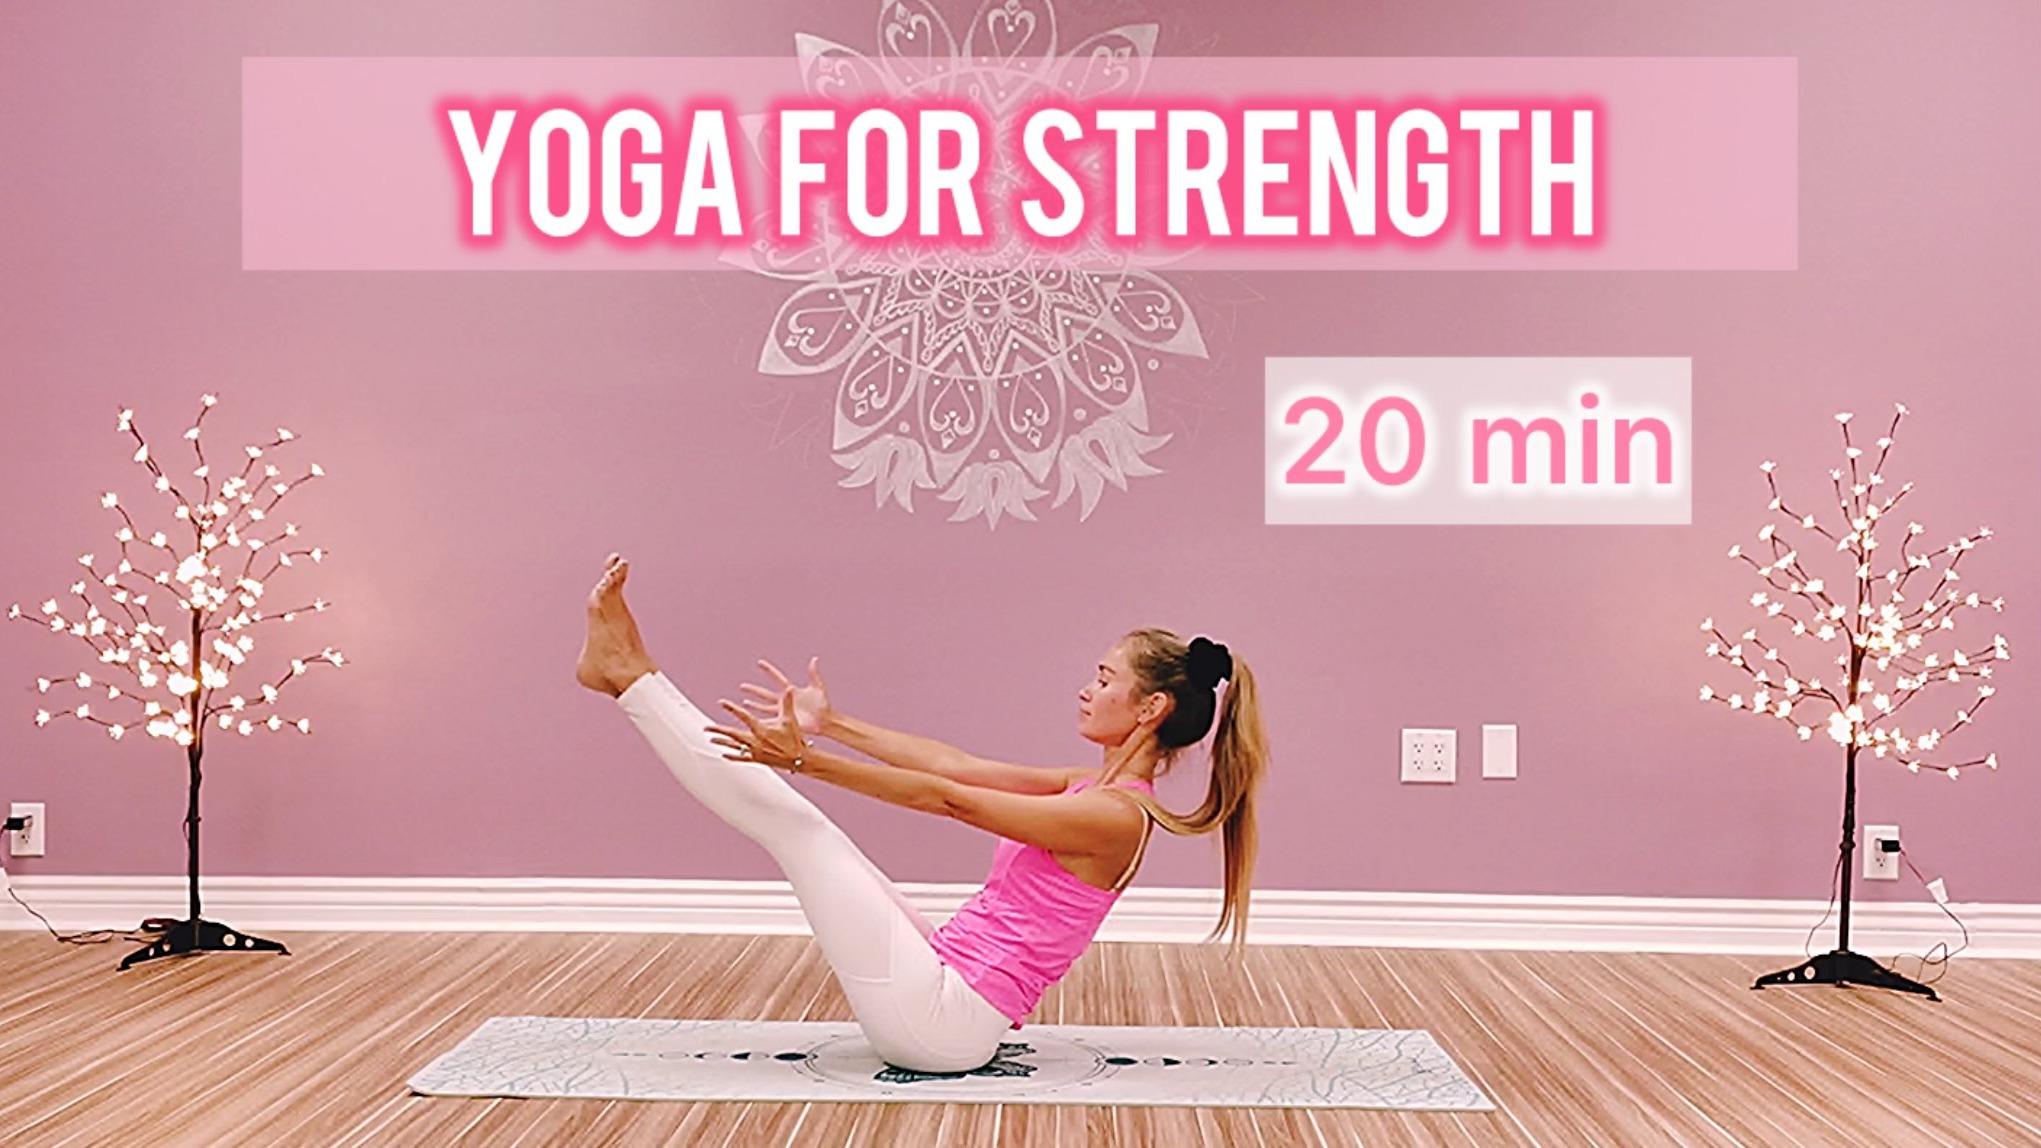 20 min yoga for strength 